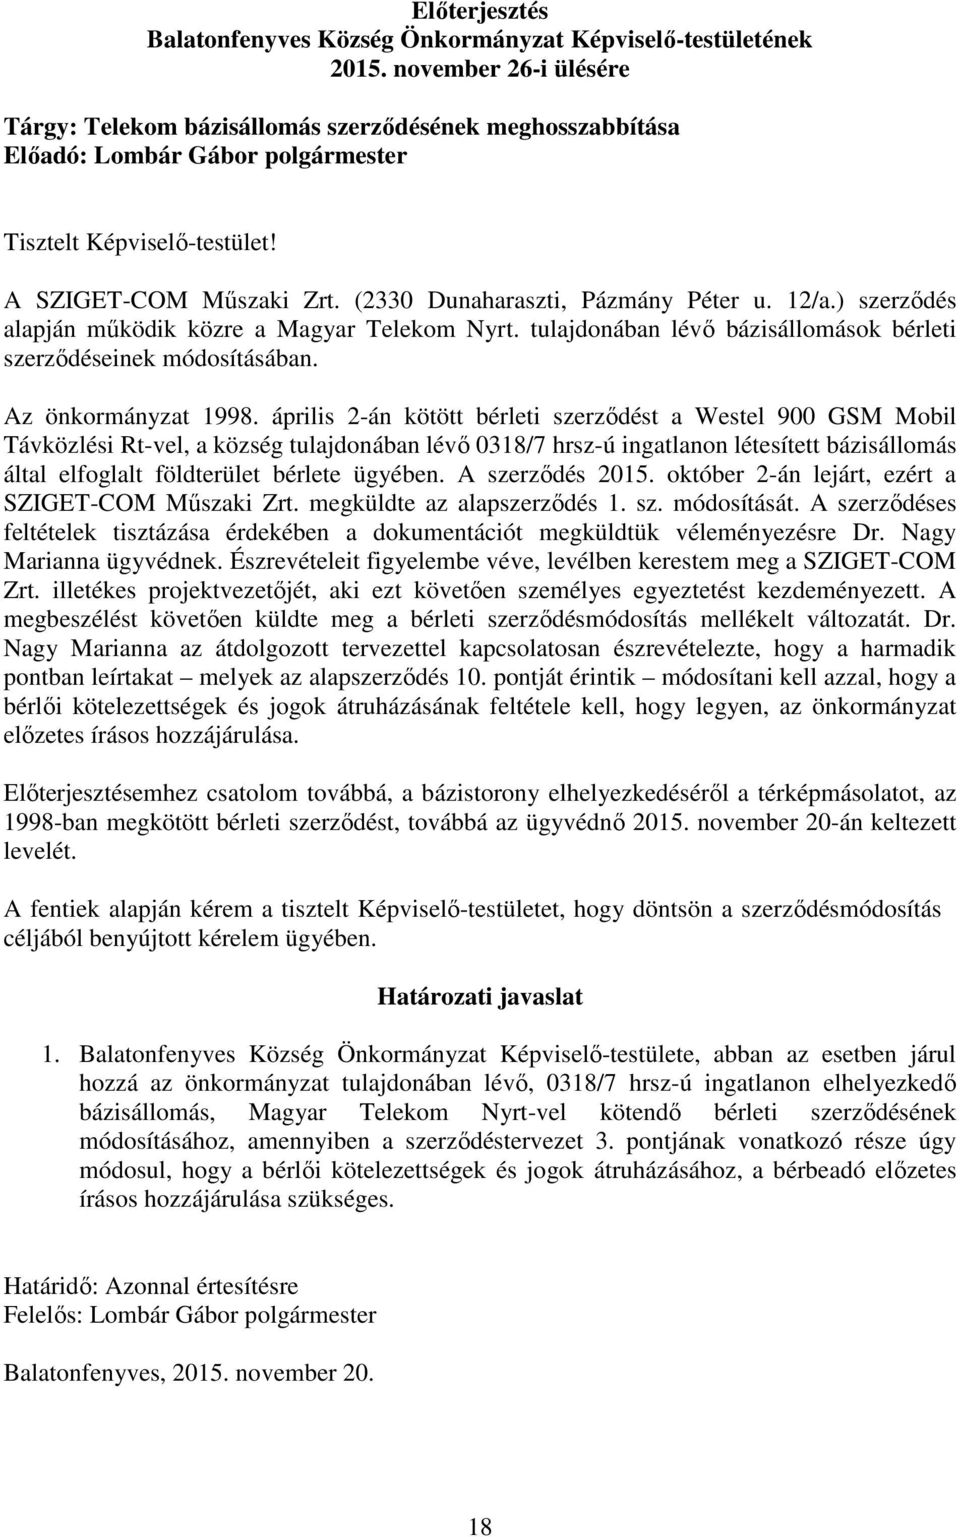 (2330 Dunaharaszti, Pázmány Péter u. 12/a.) szerződés alapján működik közre a Magyar Telekom Nyrt. tulajdonában lévő bázisállomások bérleti szerződéseinek módosításában. Az önkormányzat 1998.